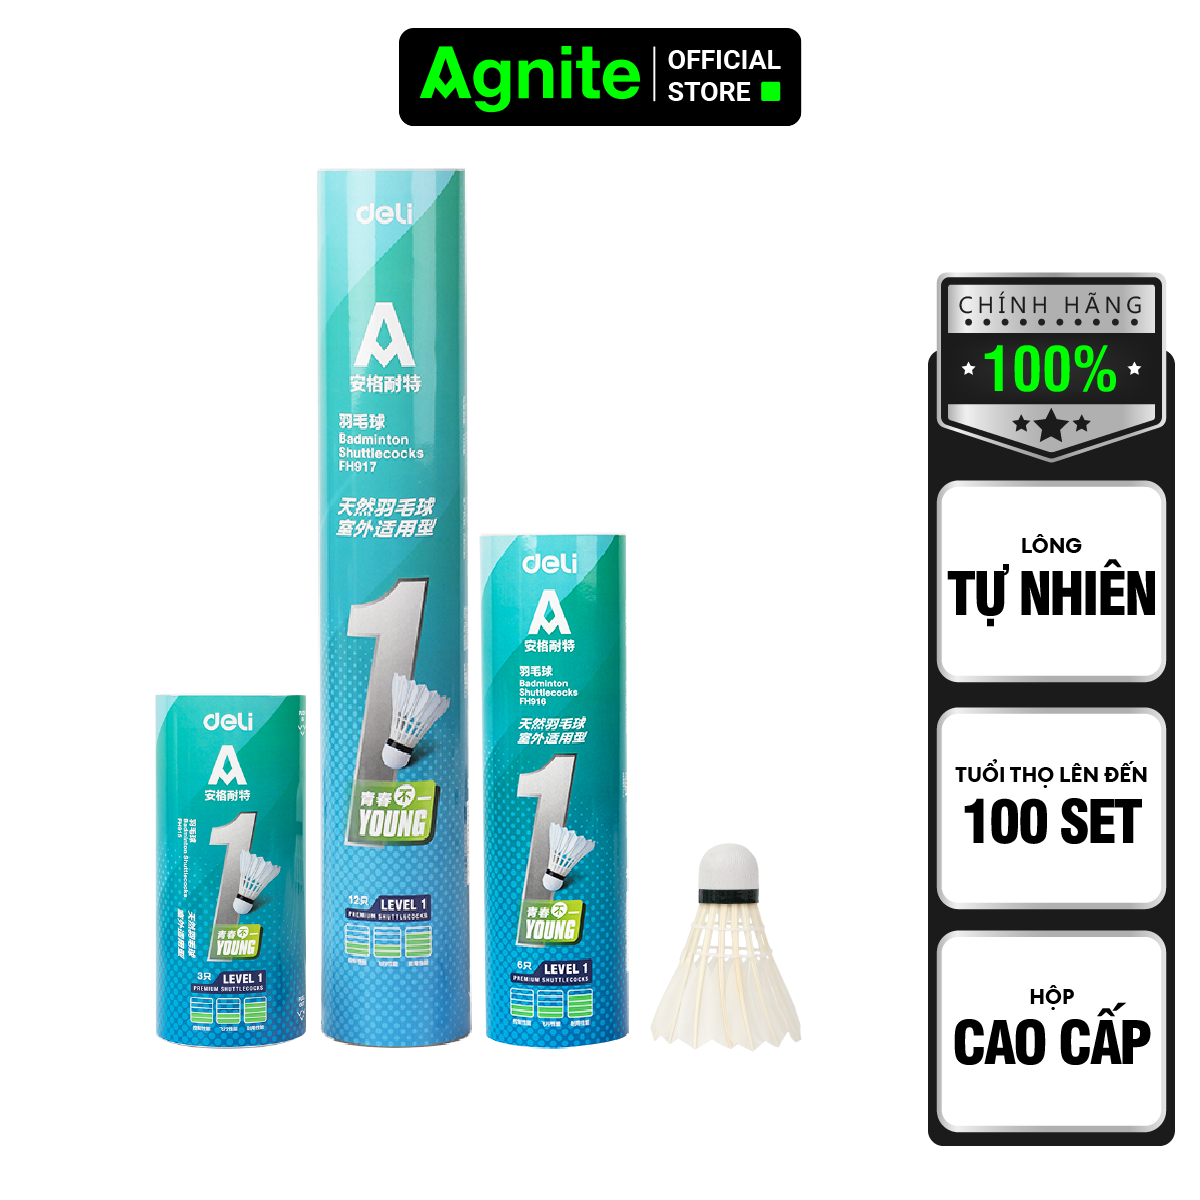 Hộp cầu lông cao cấp chính hãng Agnite, ống cầu lông vũ phục vụ luyện tập, thi đấu chuyên nghiệp - FH915